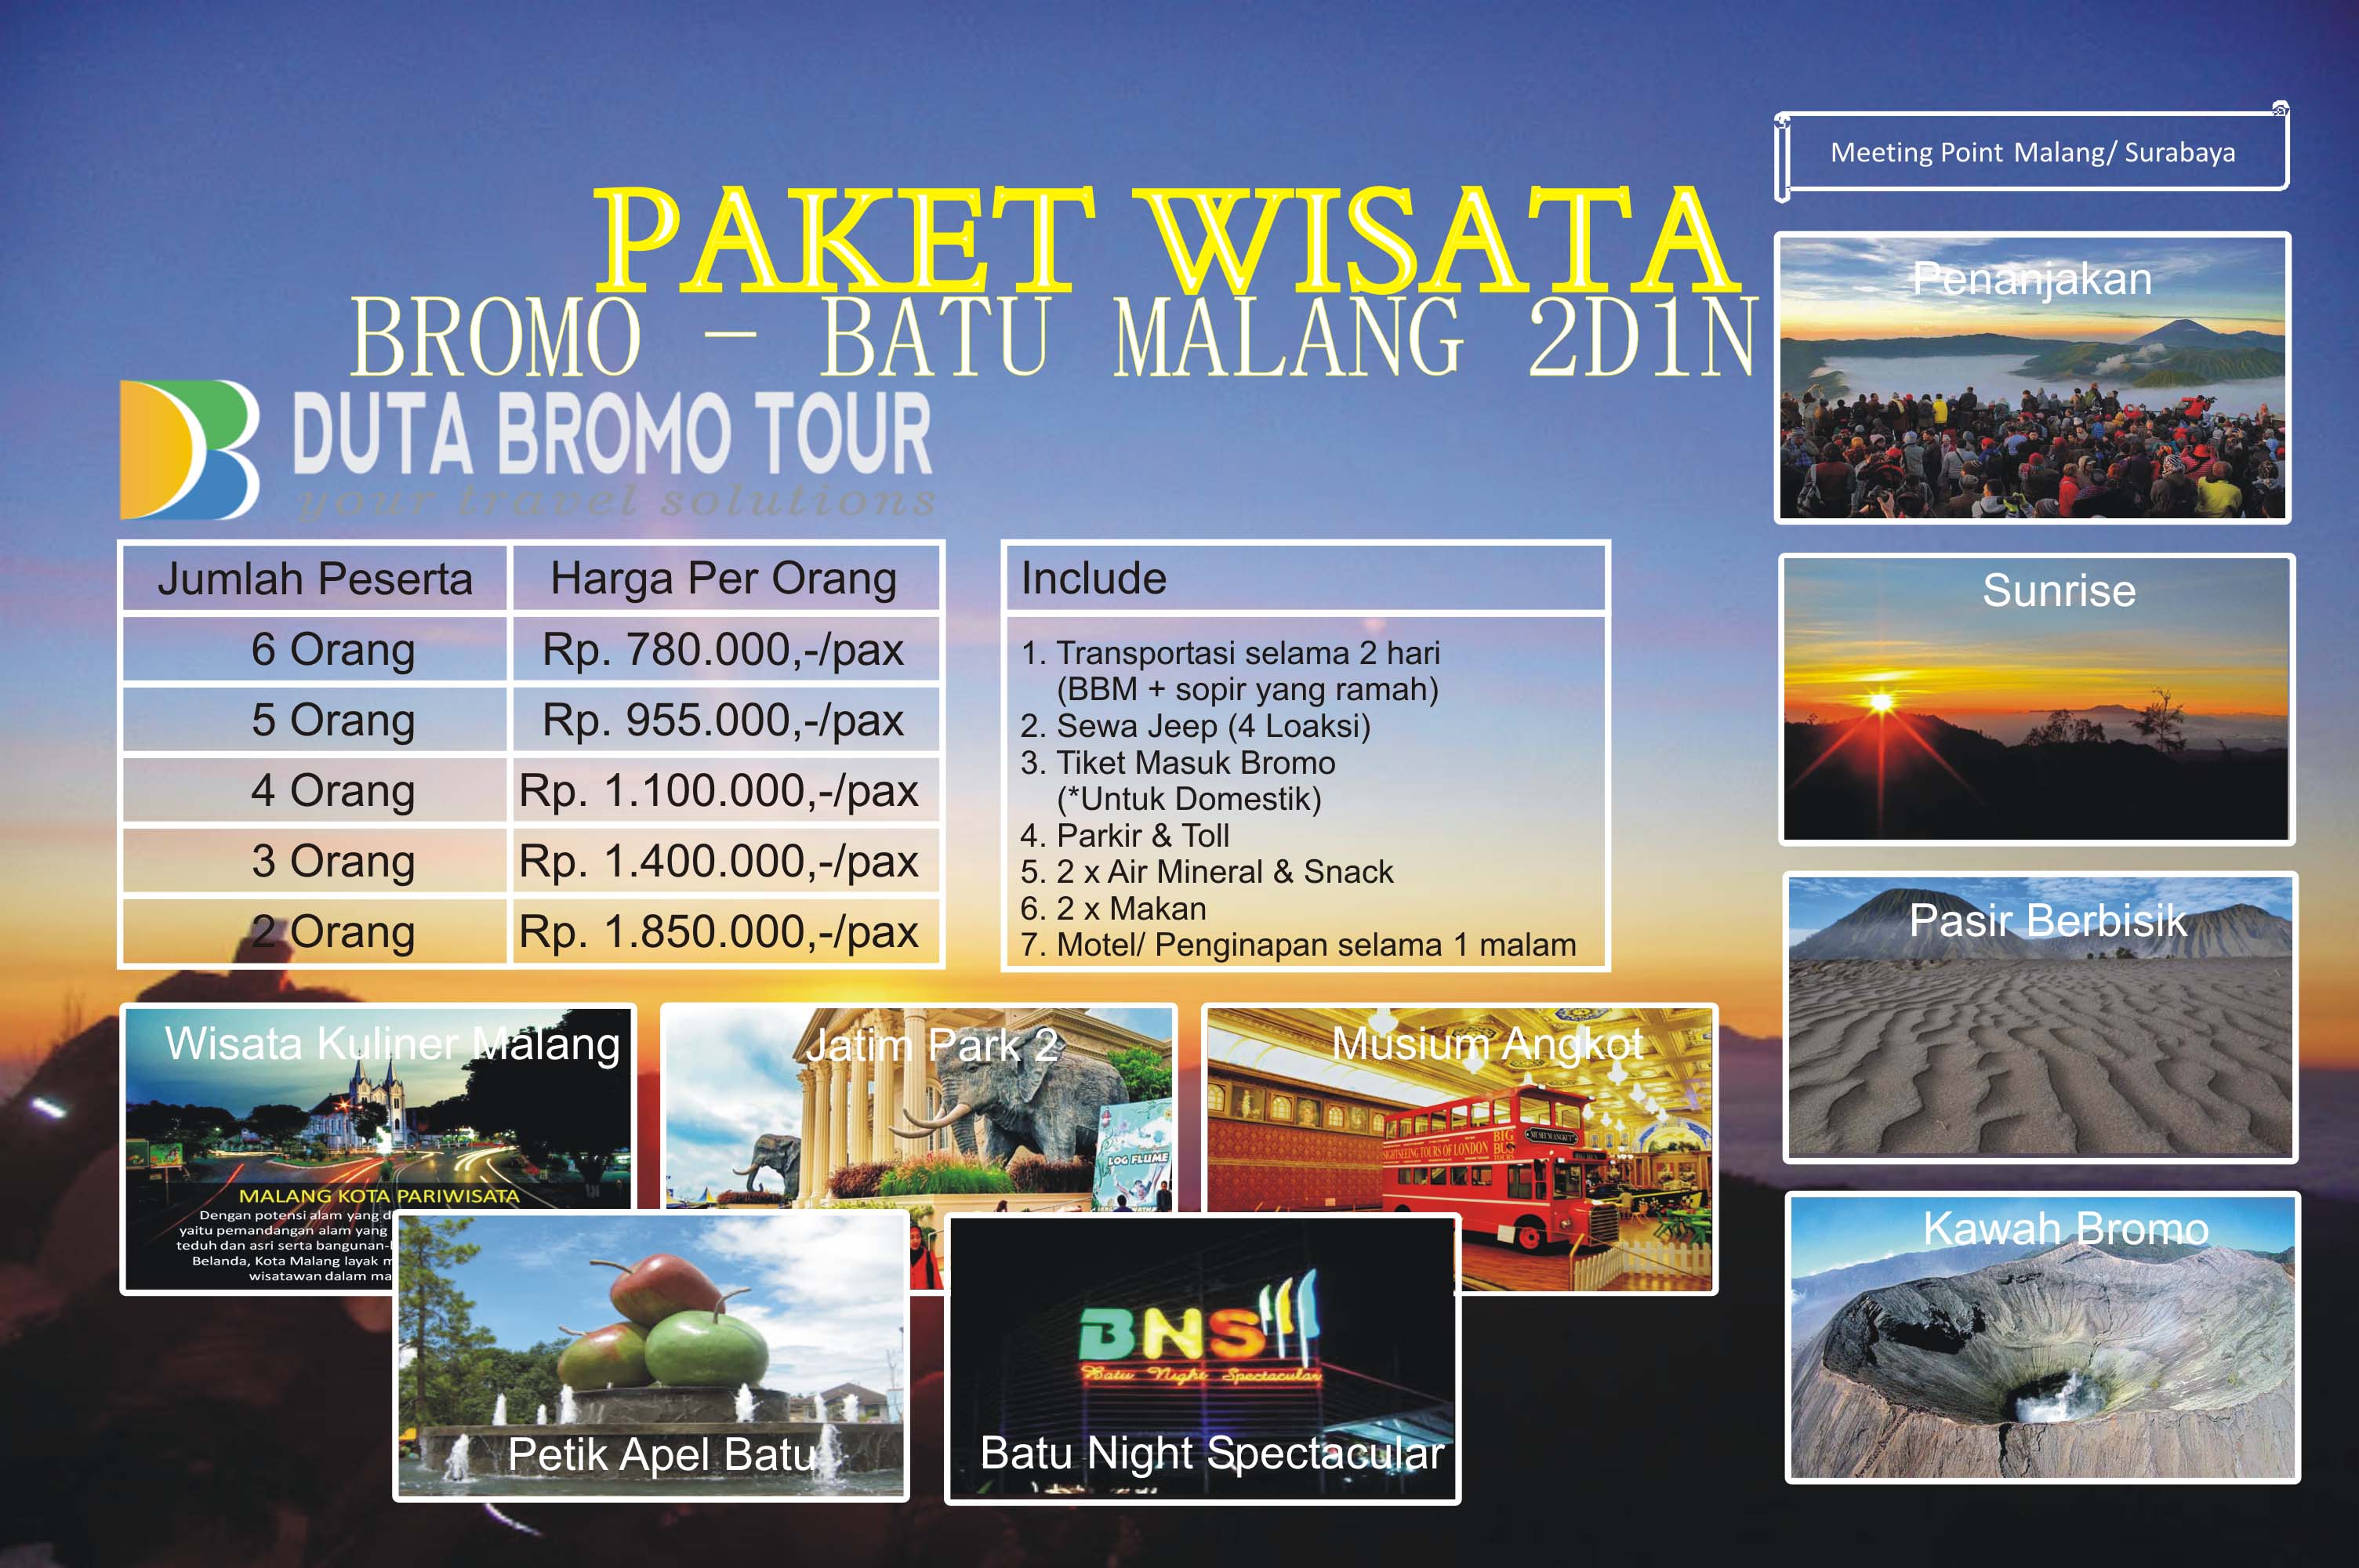 Duta Bromo Tour » Paket Bromo dan Batu Malang 2D1N